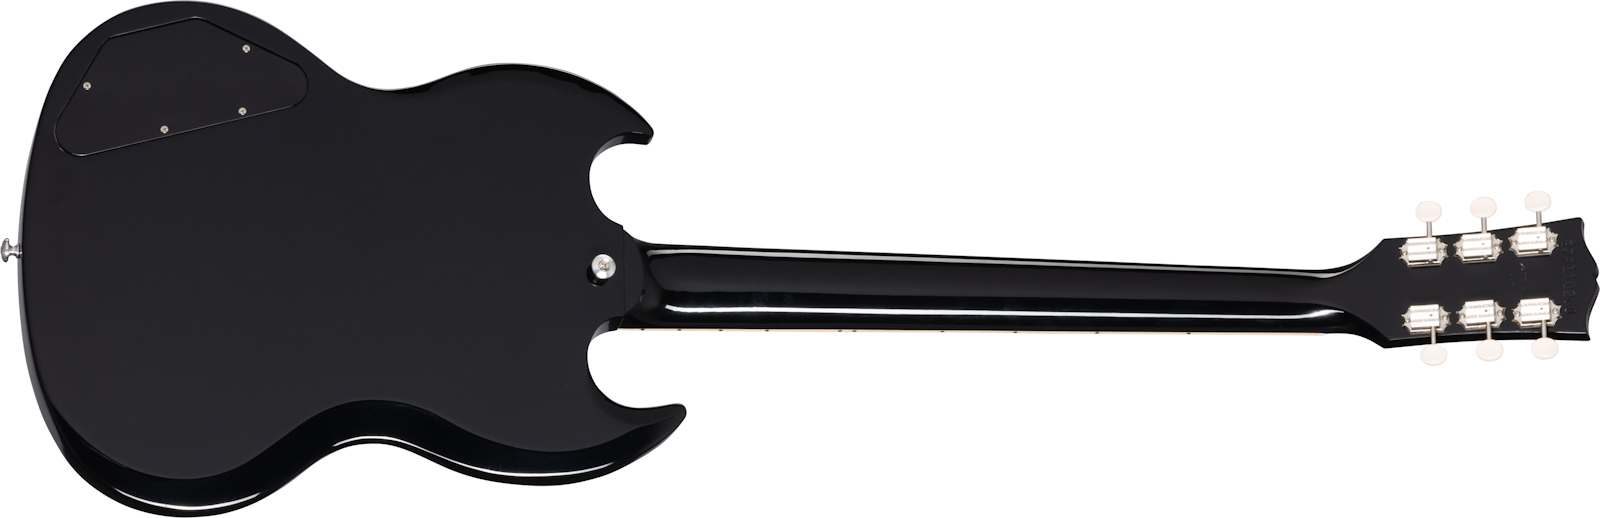 Gibson Sg Special Original 2021 2p90 Ht Rw - Ebony - Guitarra eléctrica de doble corte - Variation 1